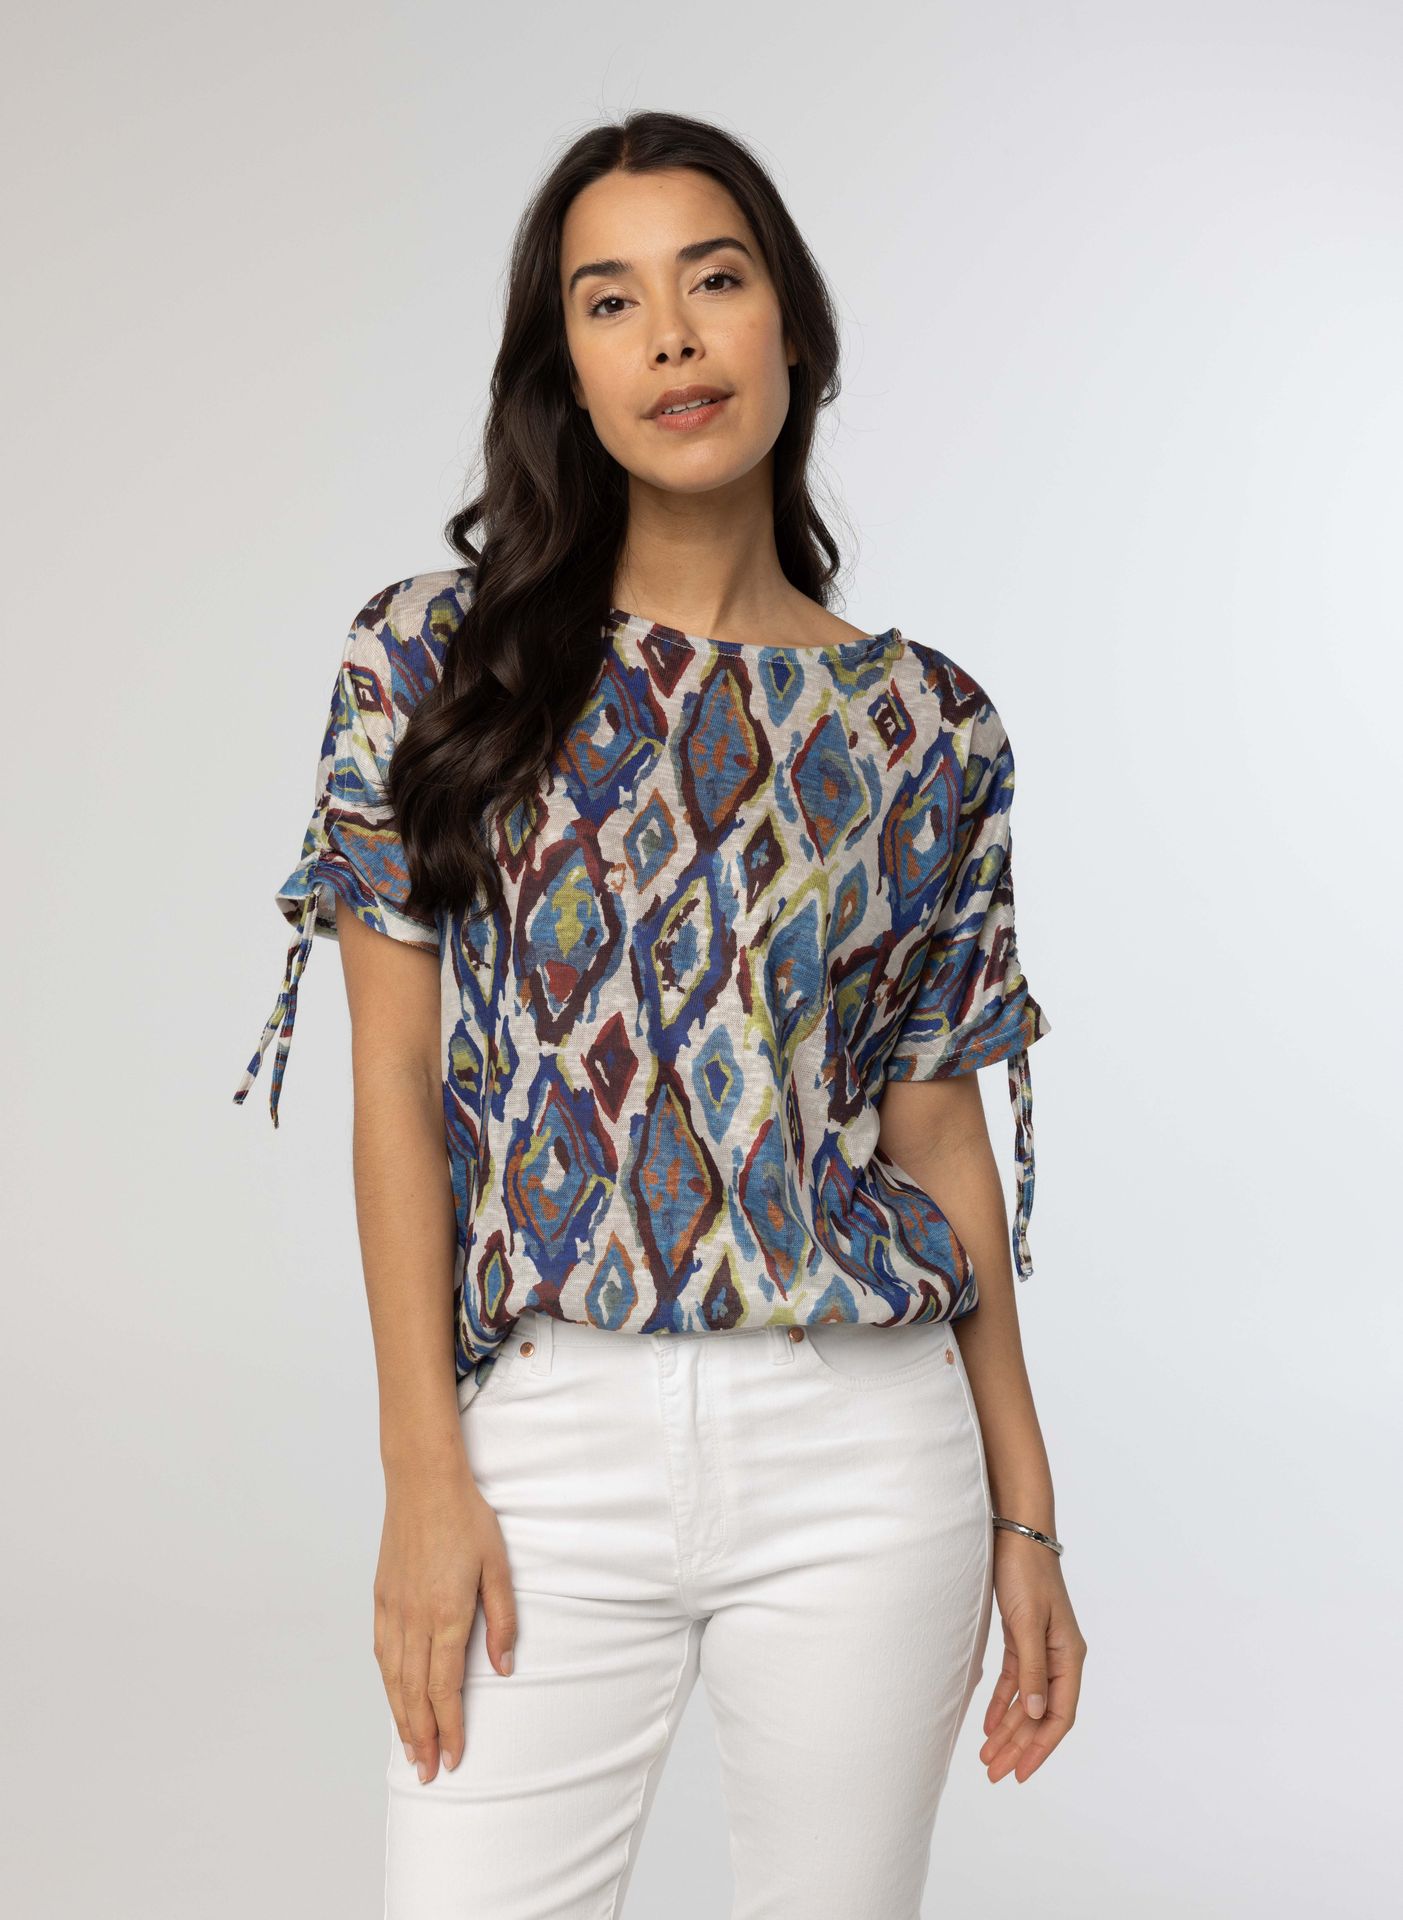 Norah Meerkleurig shirt met grafische print multicolor 214362-002